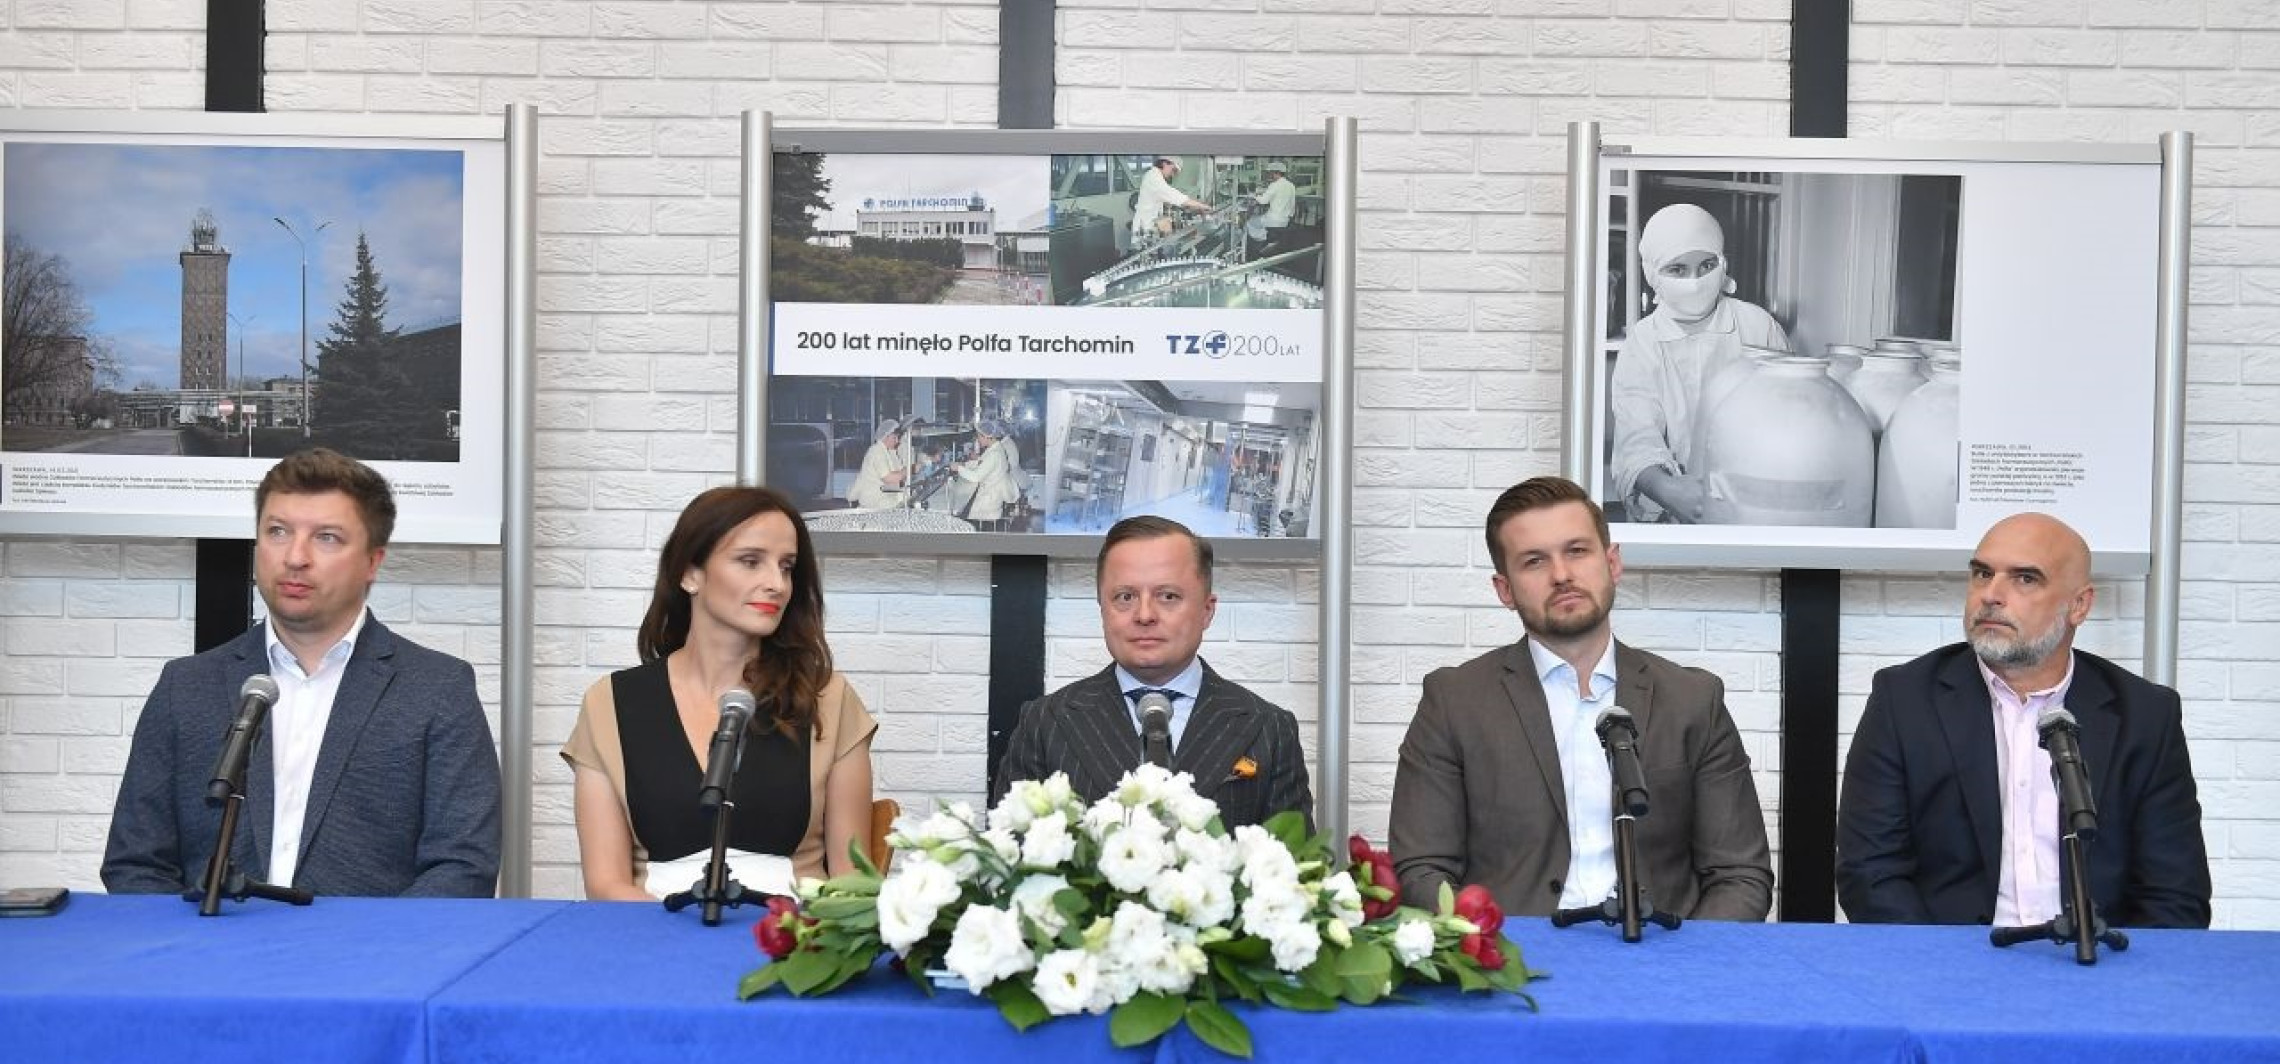 Kraj - Polfa świętuje swoje 200-lecie nowymi inwestycjami 